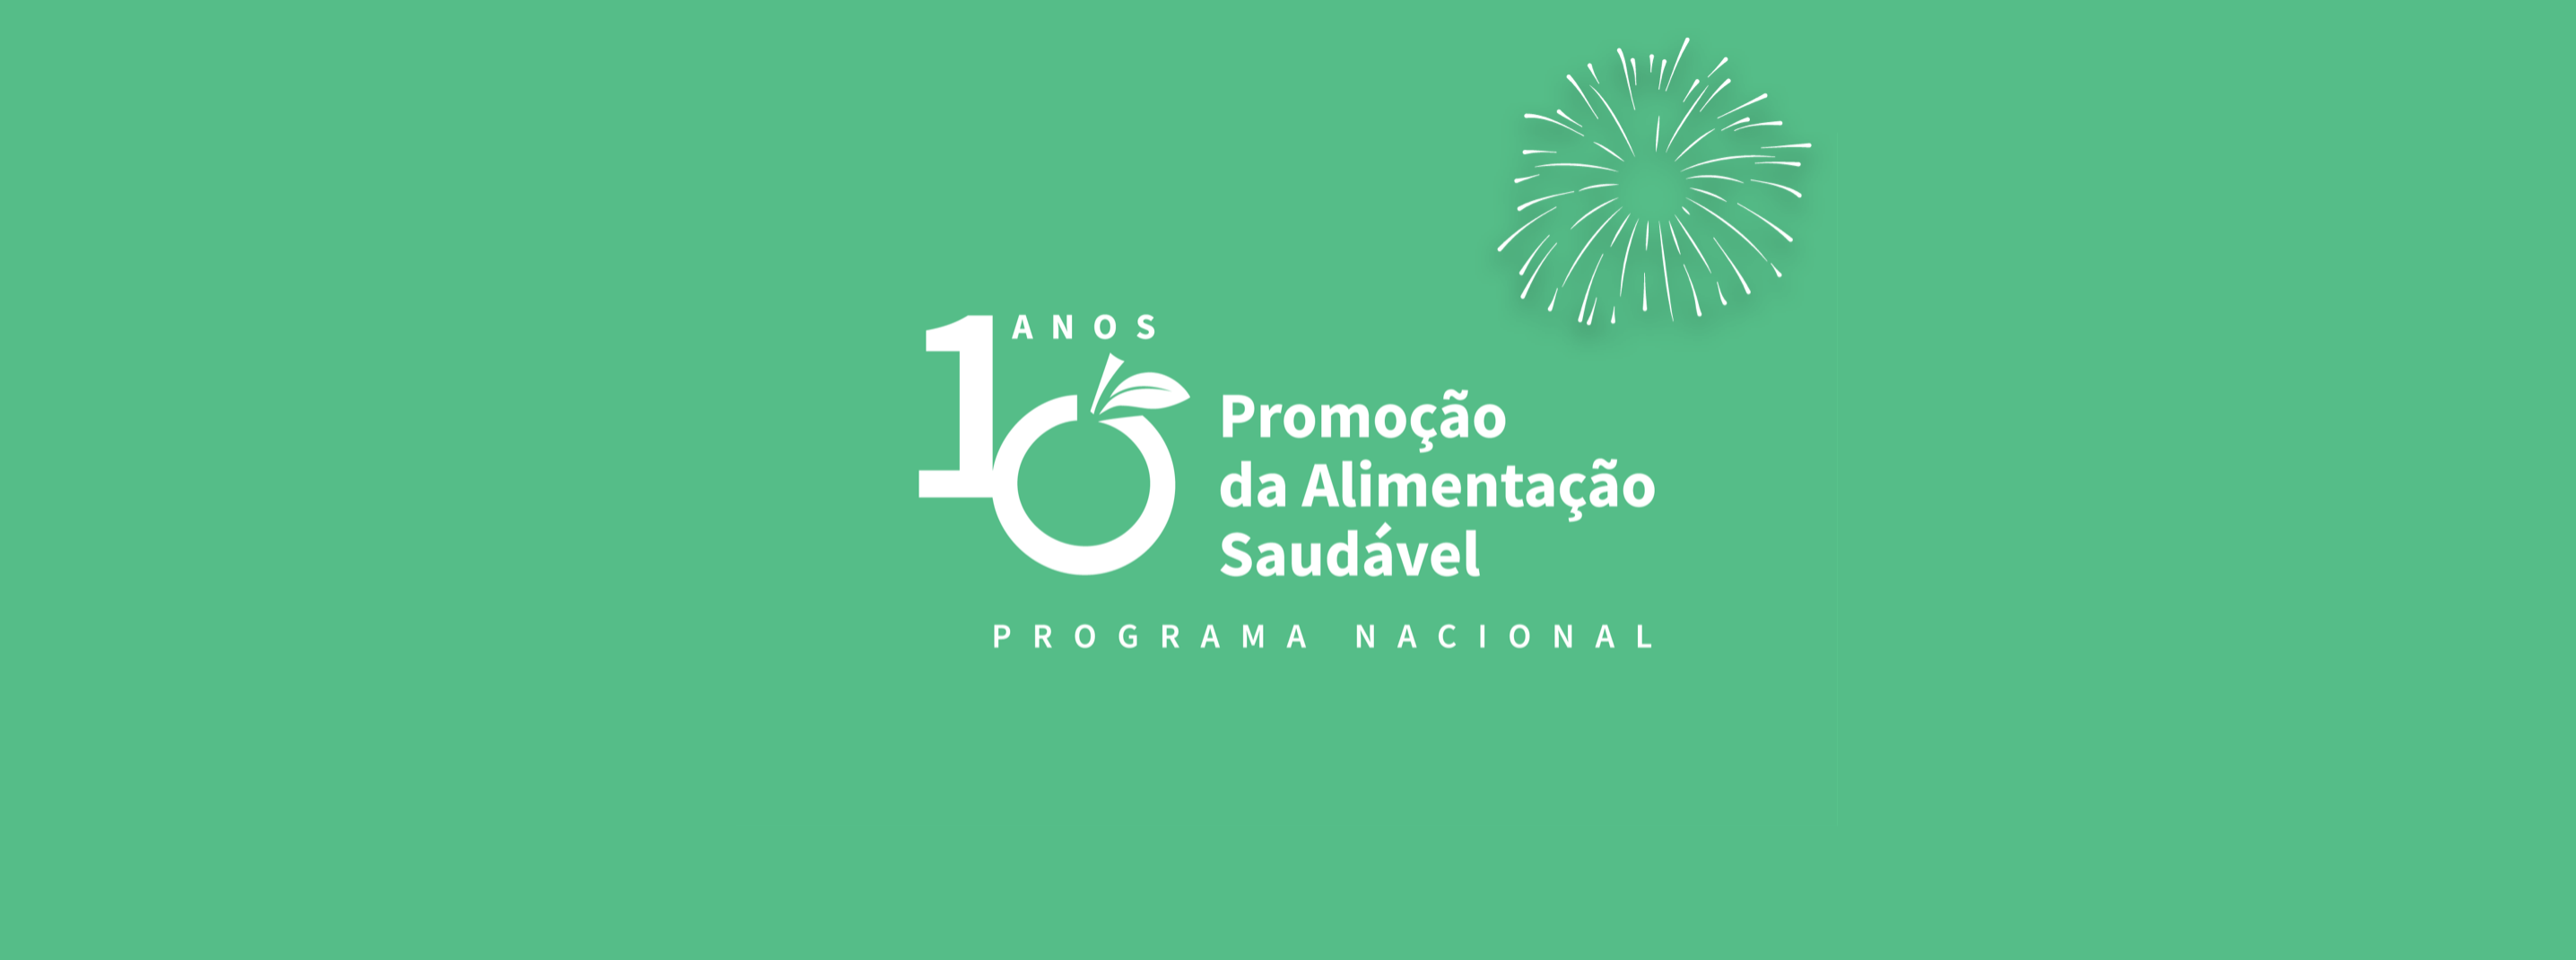 10 anos do PNPAS – uma década a promover a alimentação saudável em Portugal